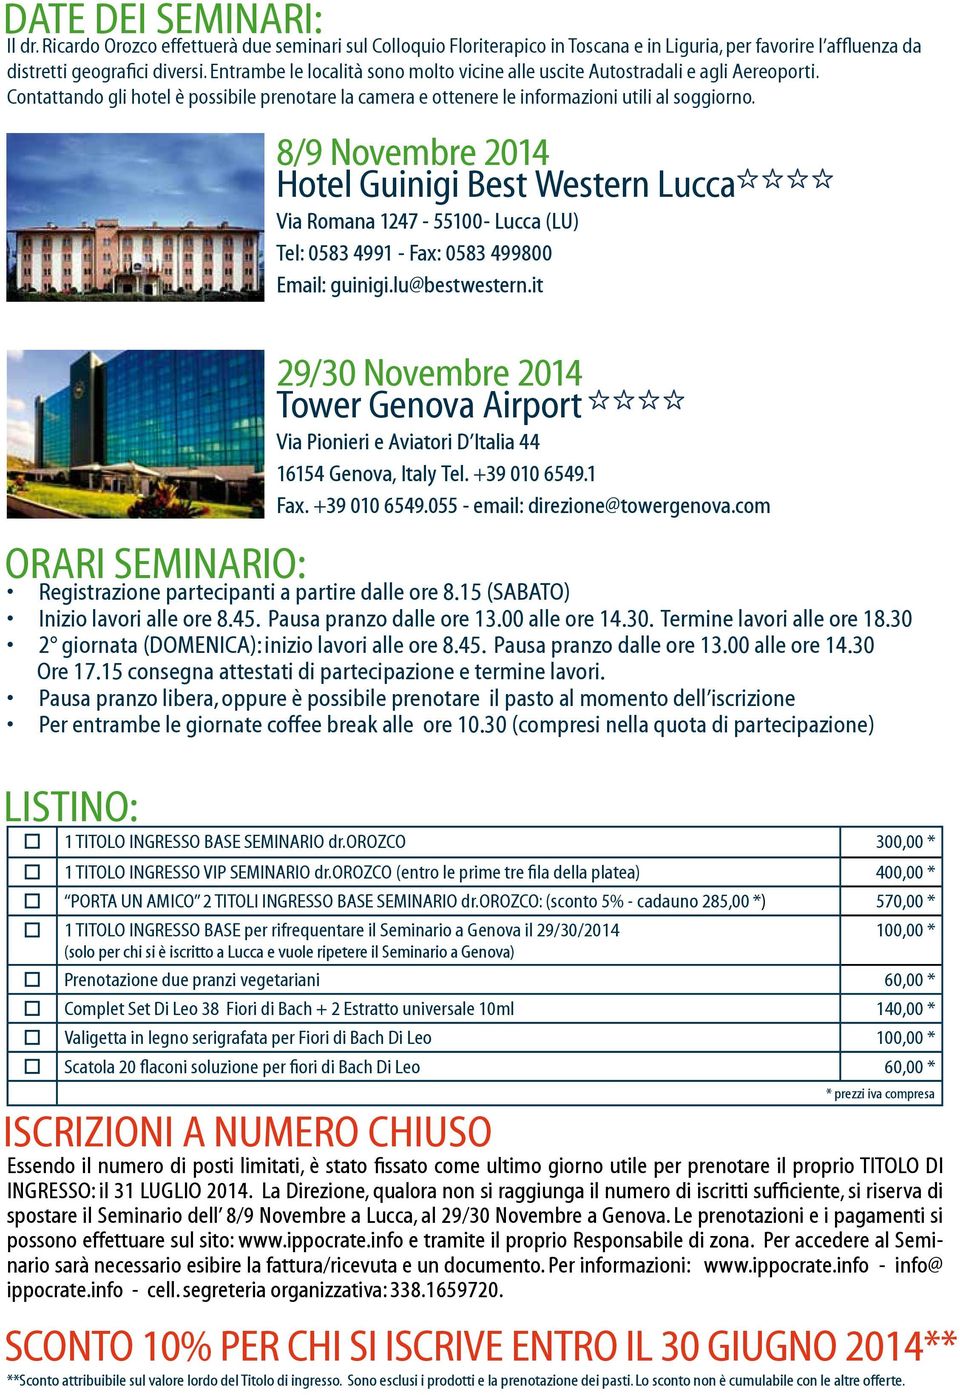 8/9 Novembre 2014 Hotel Guinigi Best Western Lucca Via Romana 1247-55100- Lucca (LU) Tel: 0583 4991 - Fax: 0583 499800 Email: guinigi.lu@bestwestern.